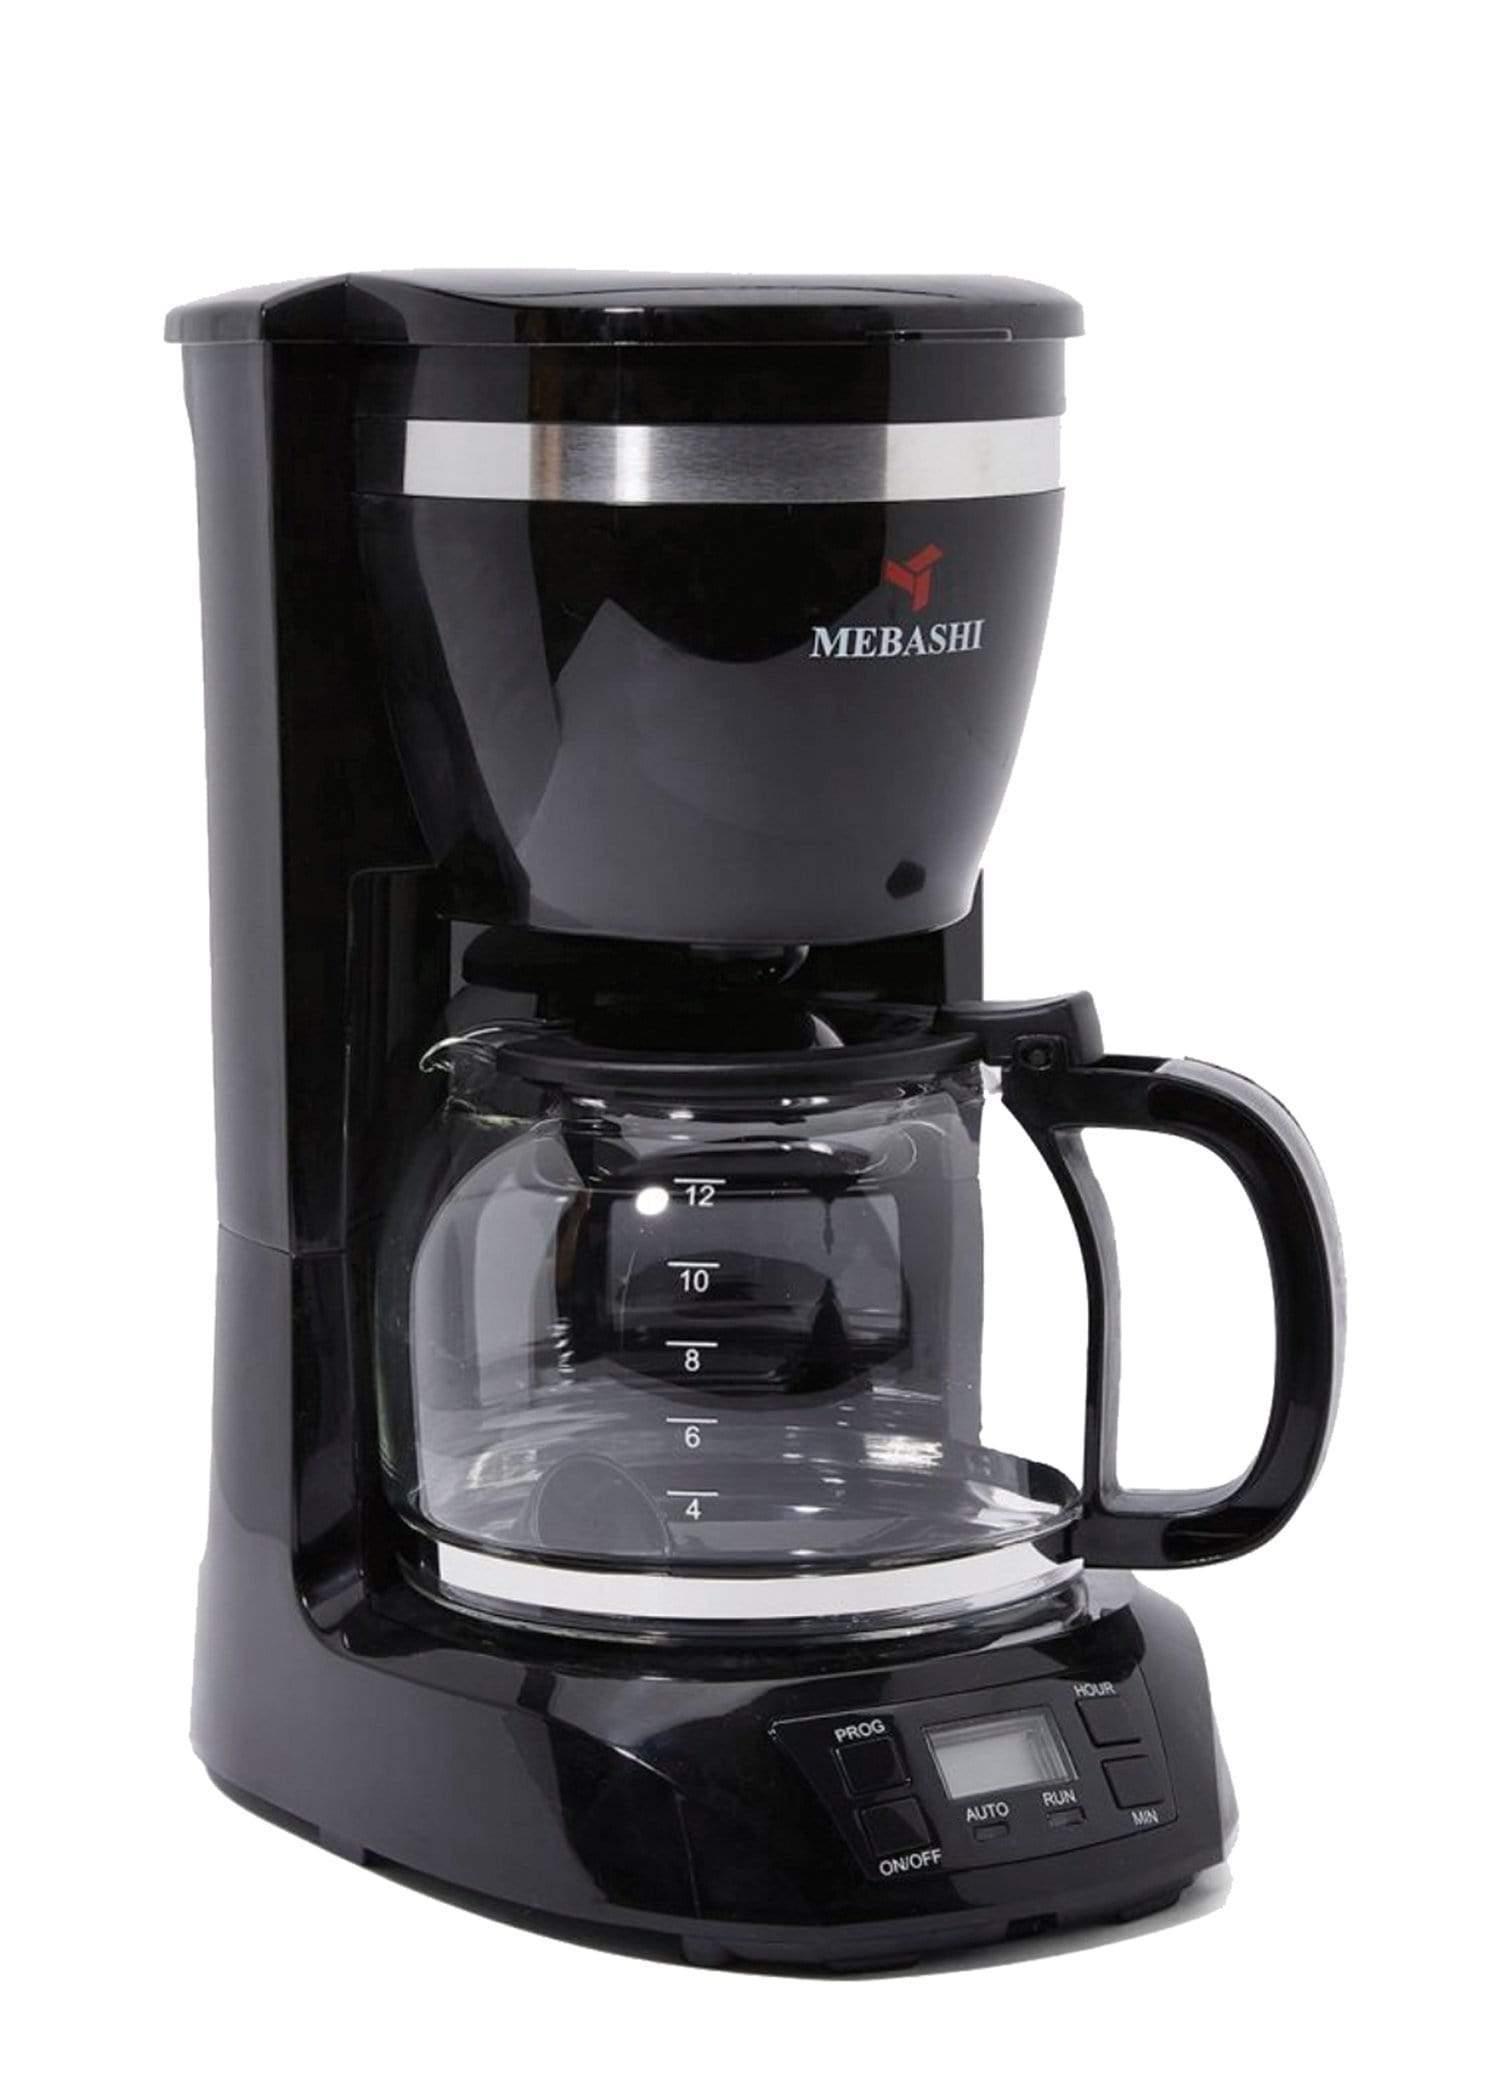 ماكينة قهوة تقطير ميباشي Mebashi Drip Coffee Machine 1.5L ME-DCM 1001B - cG9zdDo3MTYwNg==